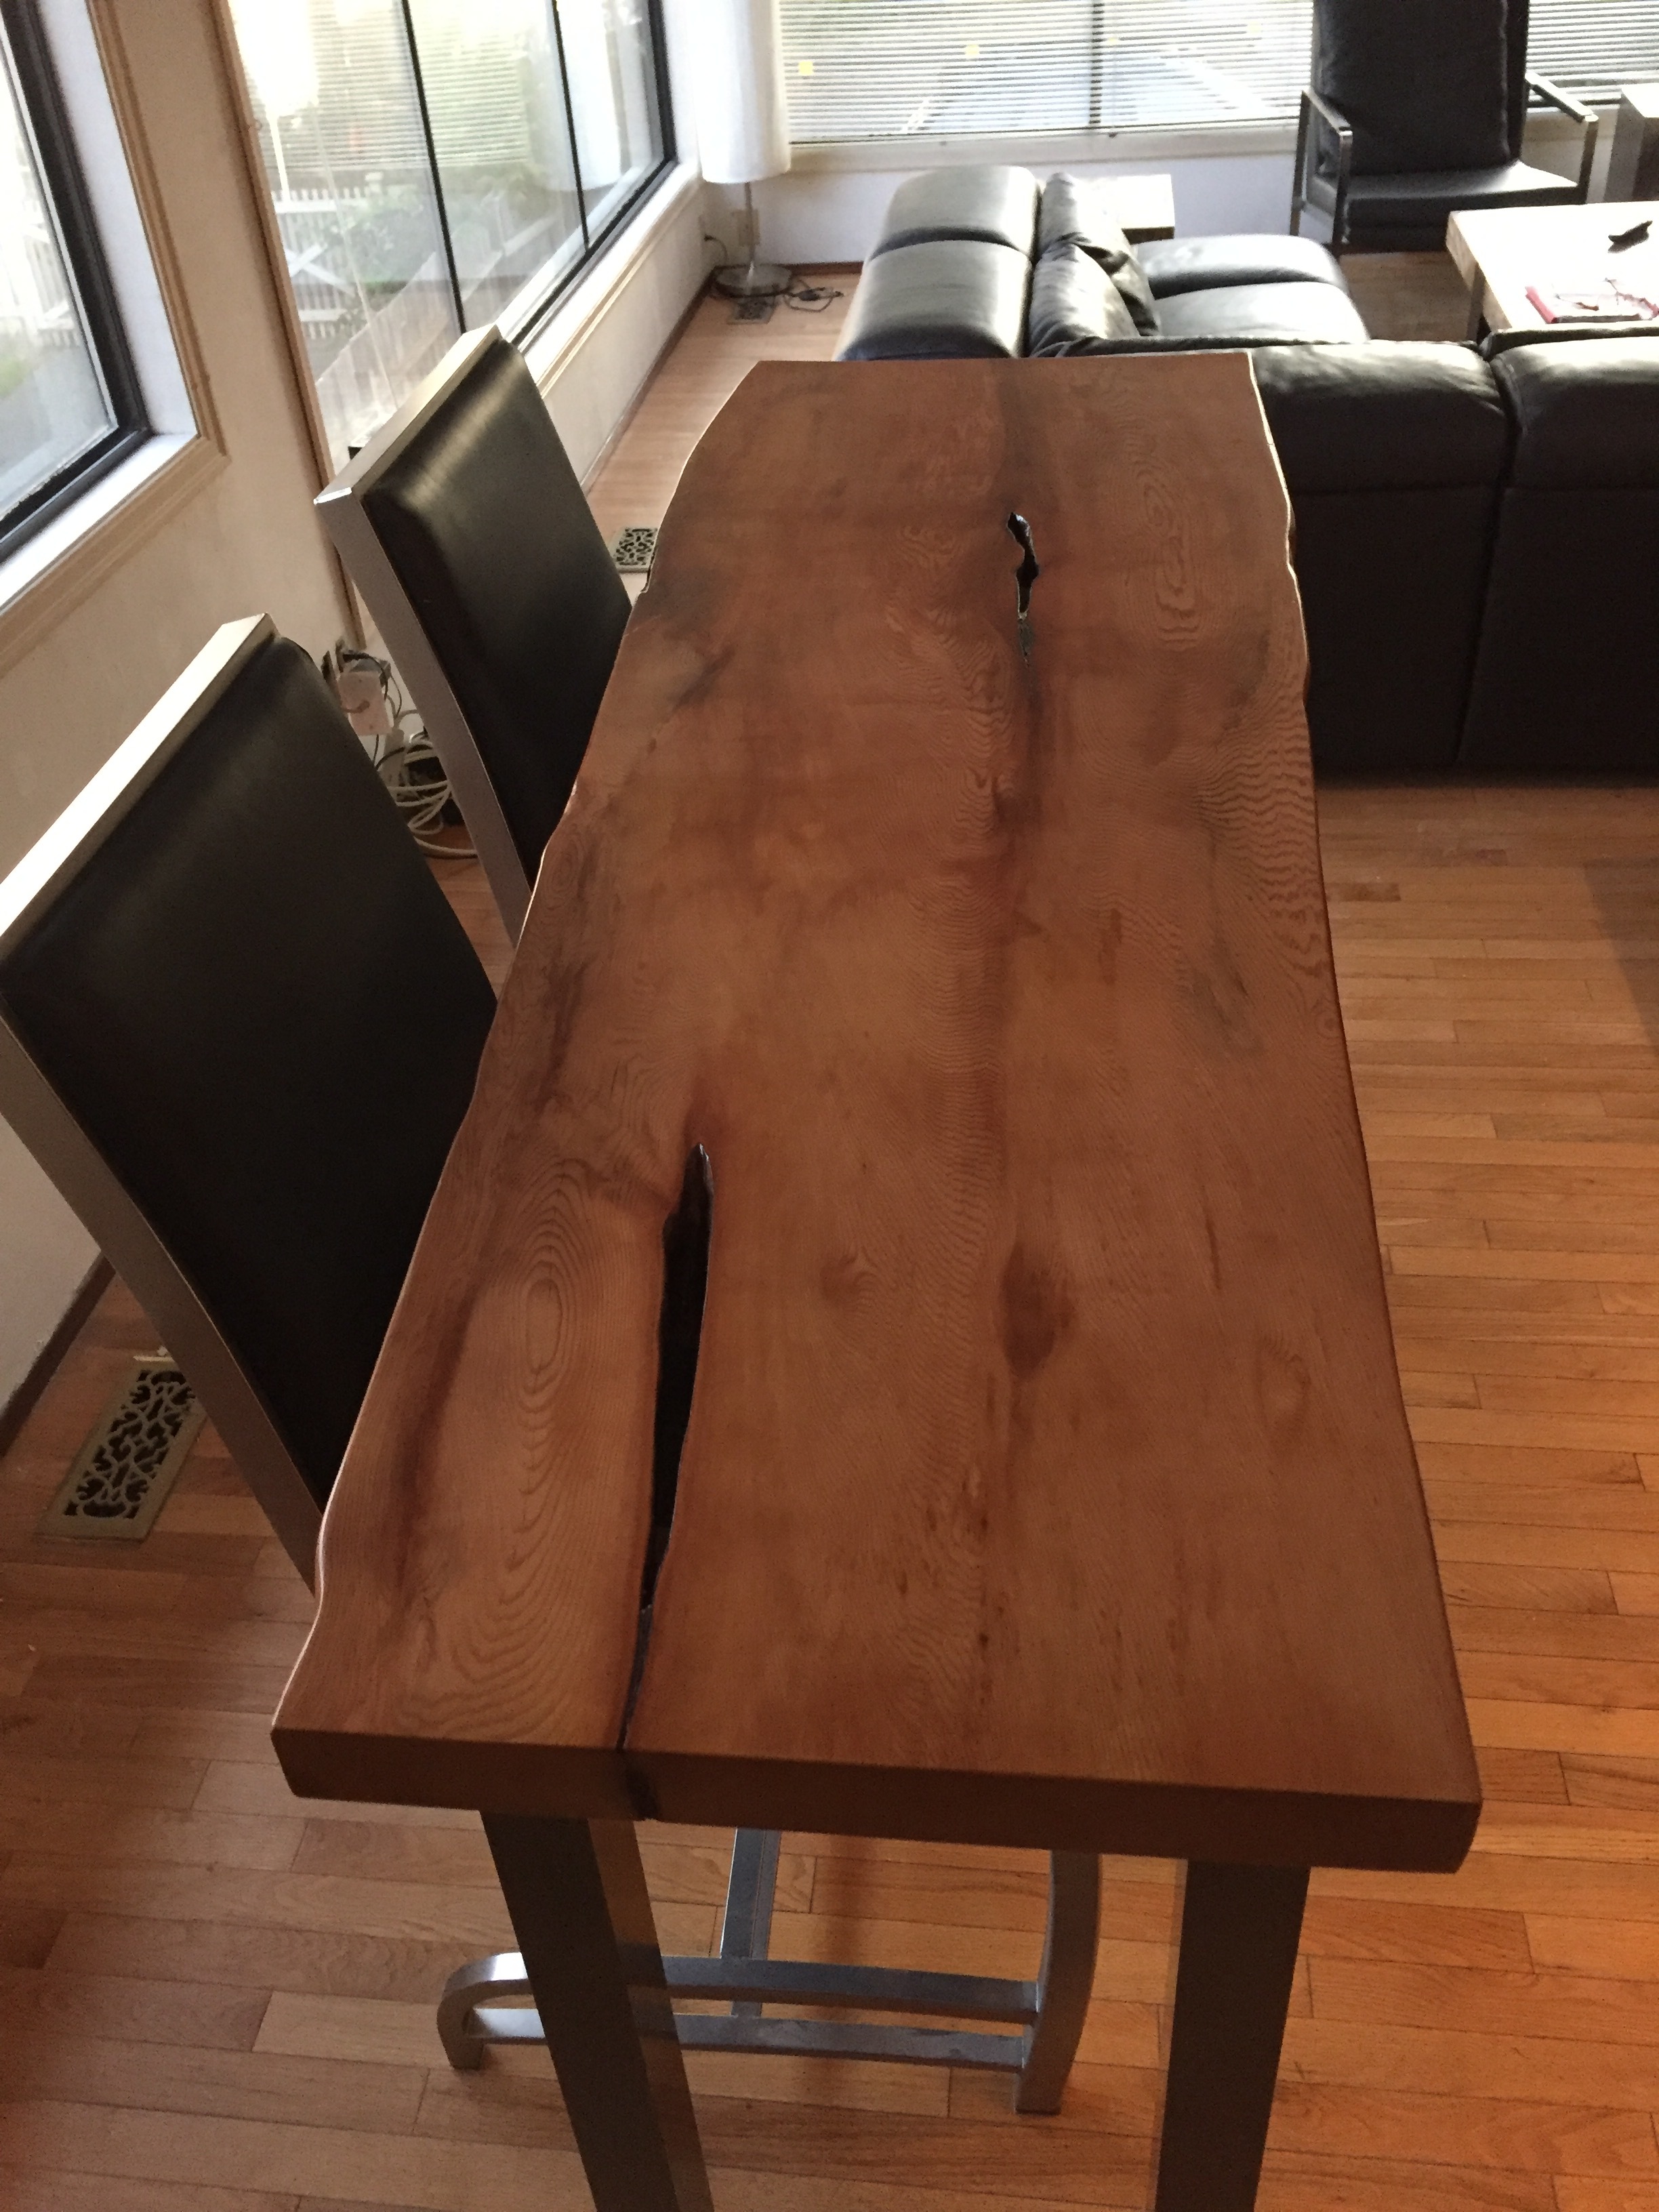 Condo Cedar Dining Table